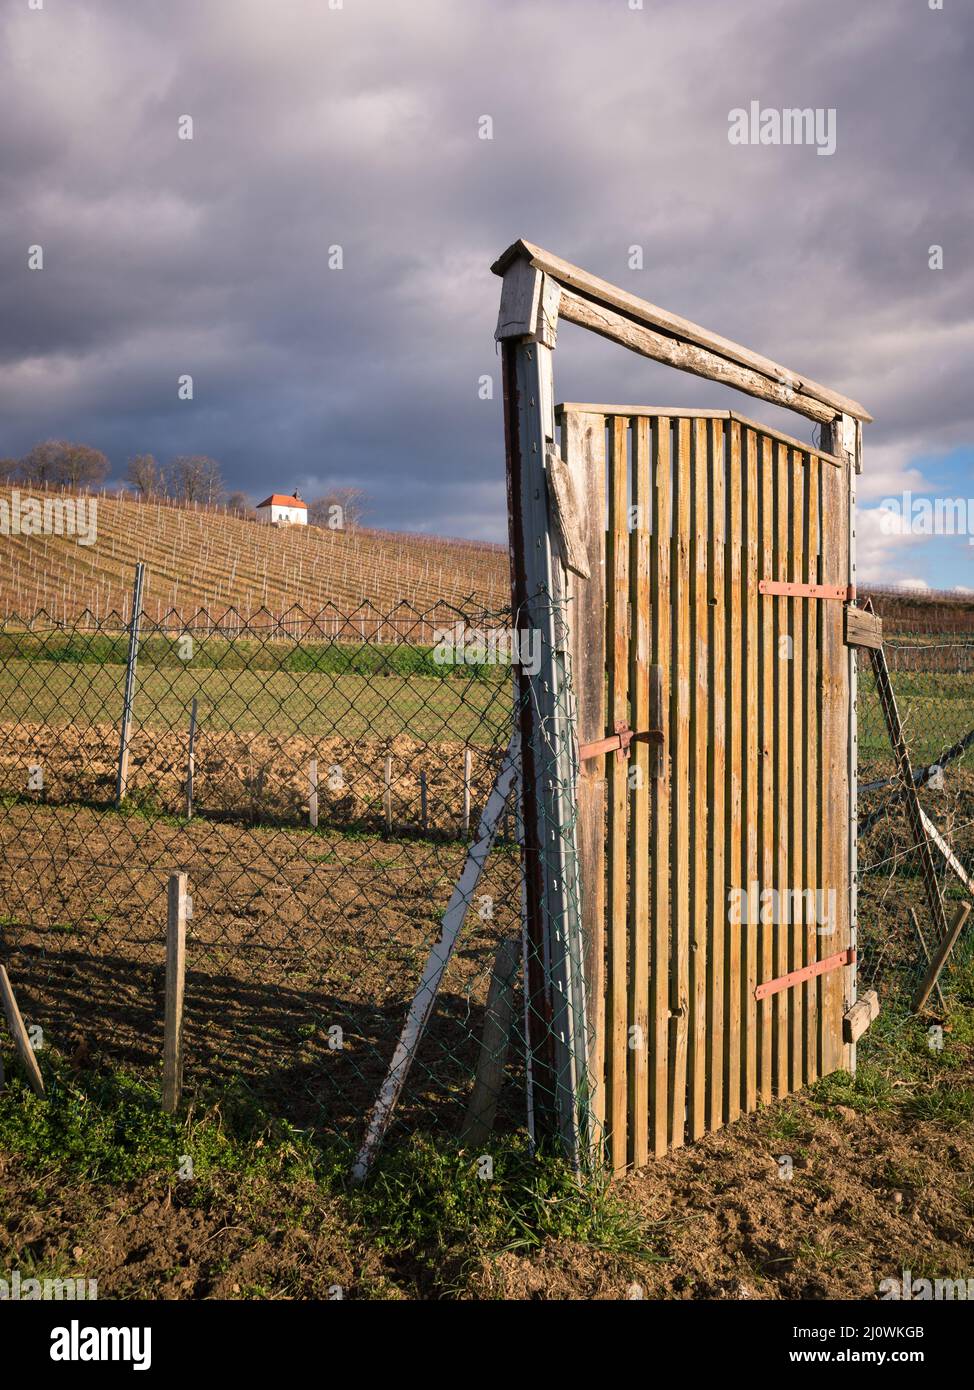 Wooden Door in vineyard landscape Stock Photo